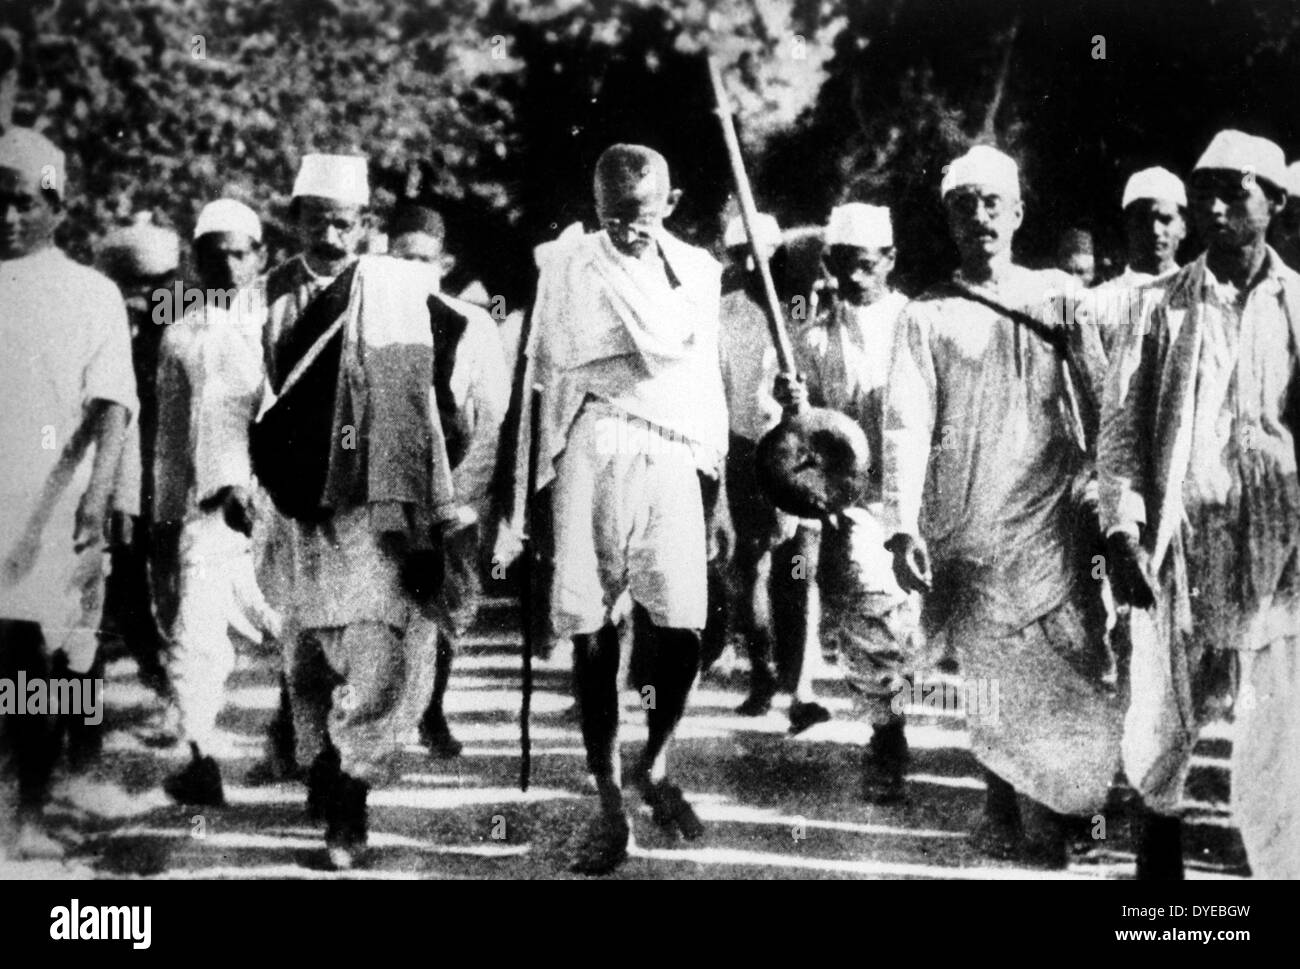 Gandhi führt eine Gruppe von Demonstranten während der Salz März, vor allem auch bekannt als das Salz Satyagraha, begann mit der Dandi März am 12. März 1930, und war ein wichtiger Teil der indischen Unabhängigkeitsbewegung. Es war eine direkte Aktion der Steuer Widerstand und gewaltfreien Protest gegen die britischen Salz Monopol im kolonialen Indien Stockfoto